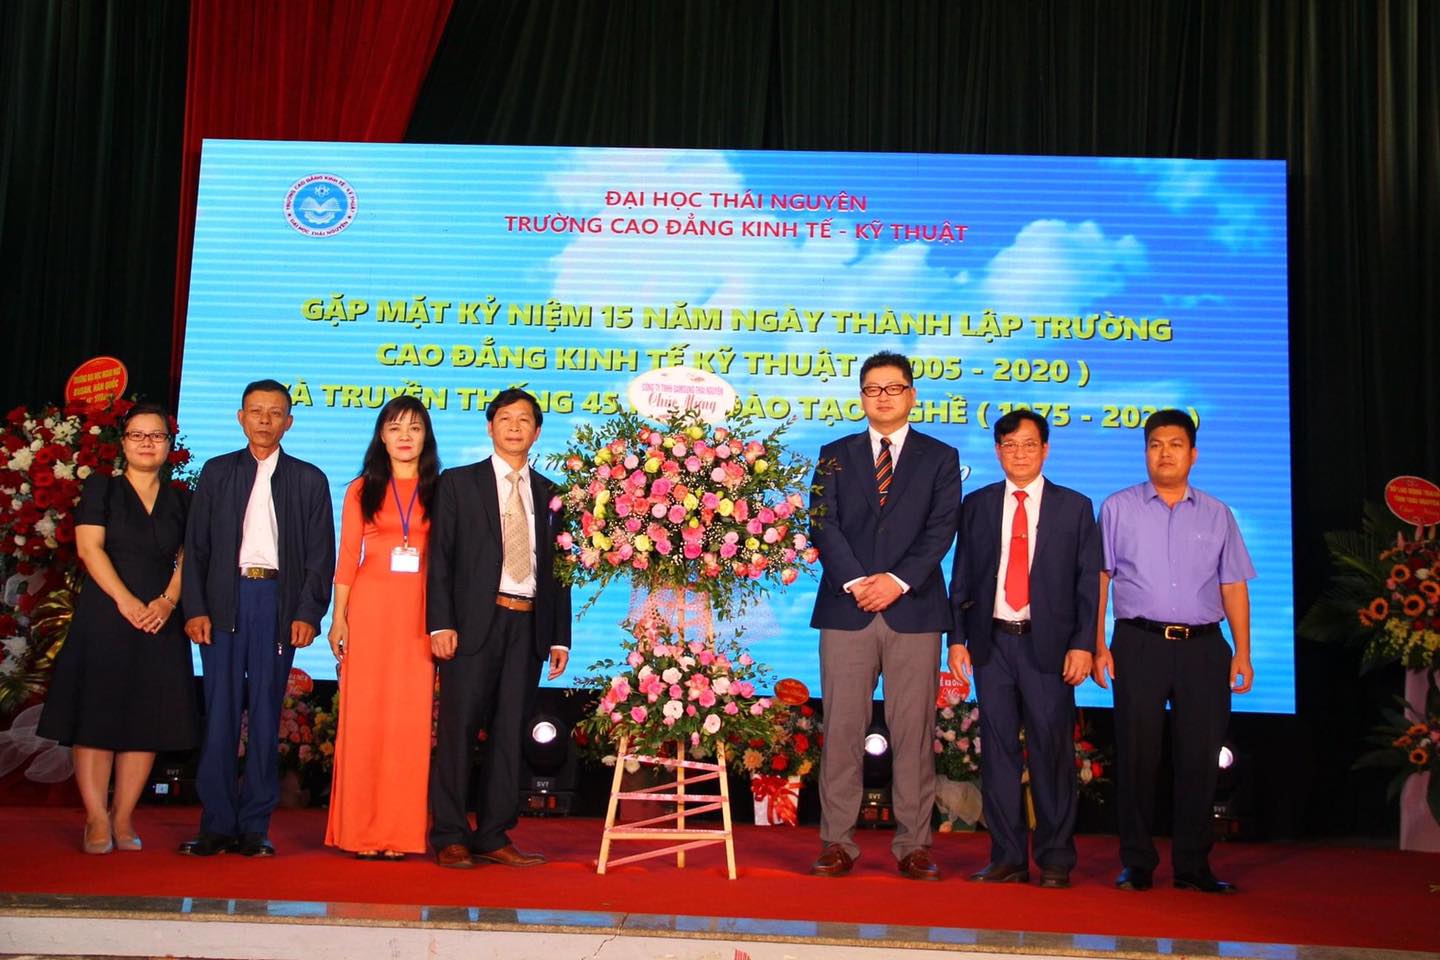 U.I.H. ghé thăm và chúc mừng kỷ niệm thành lập trường CĐ Kinh tế – Kỹ thuật Thái Nguyên